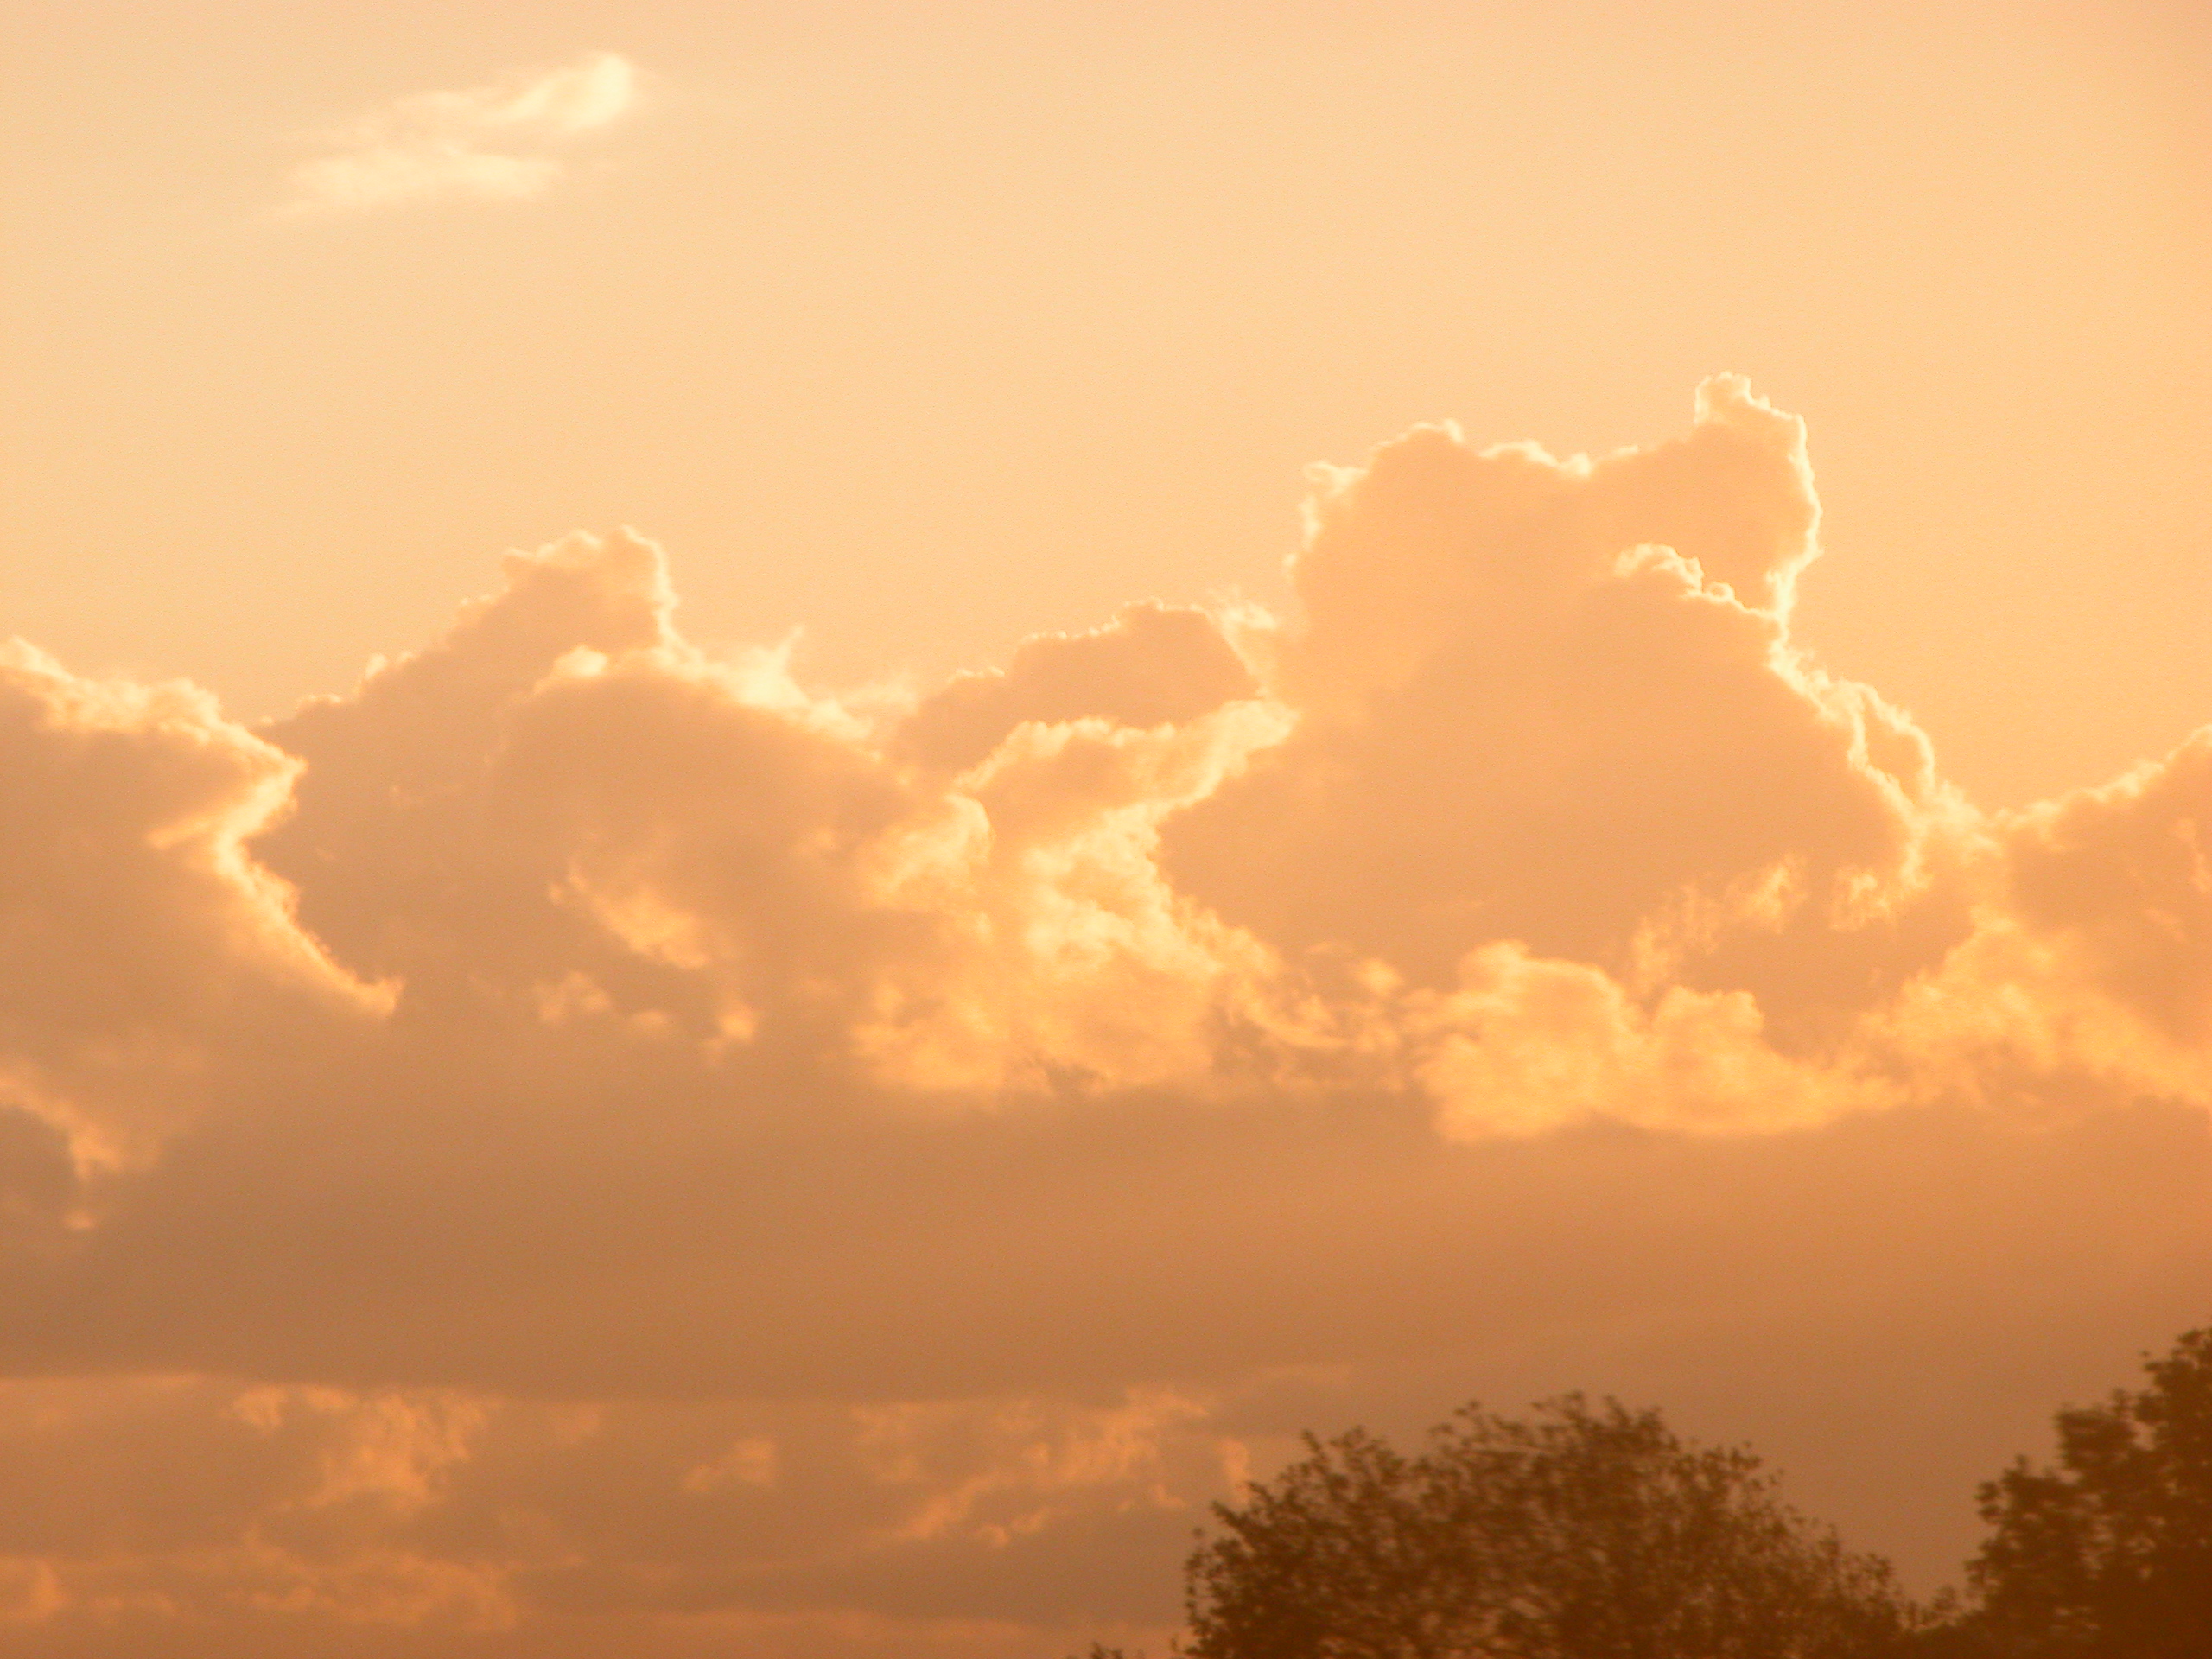 Image*After : photos : orange clouds sky horizon evening sky sunset